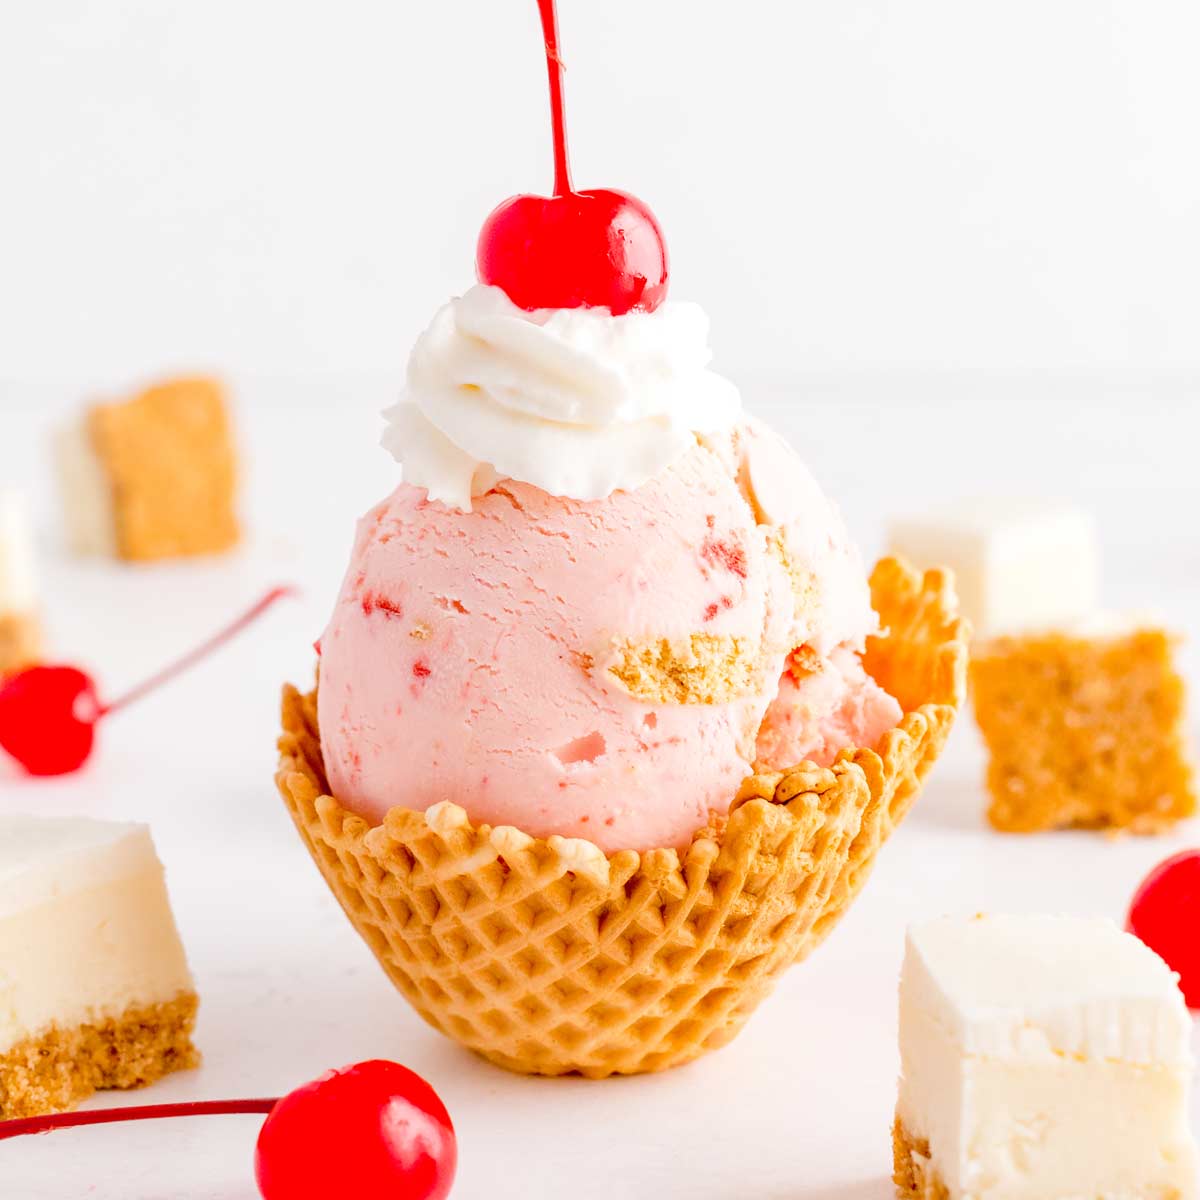 تصویر از دستورالعمل بستنی چیز کیک خانگی خوشمزه برای روز های گرم تابستان